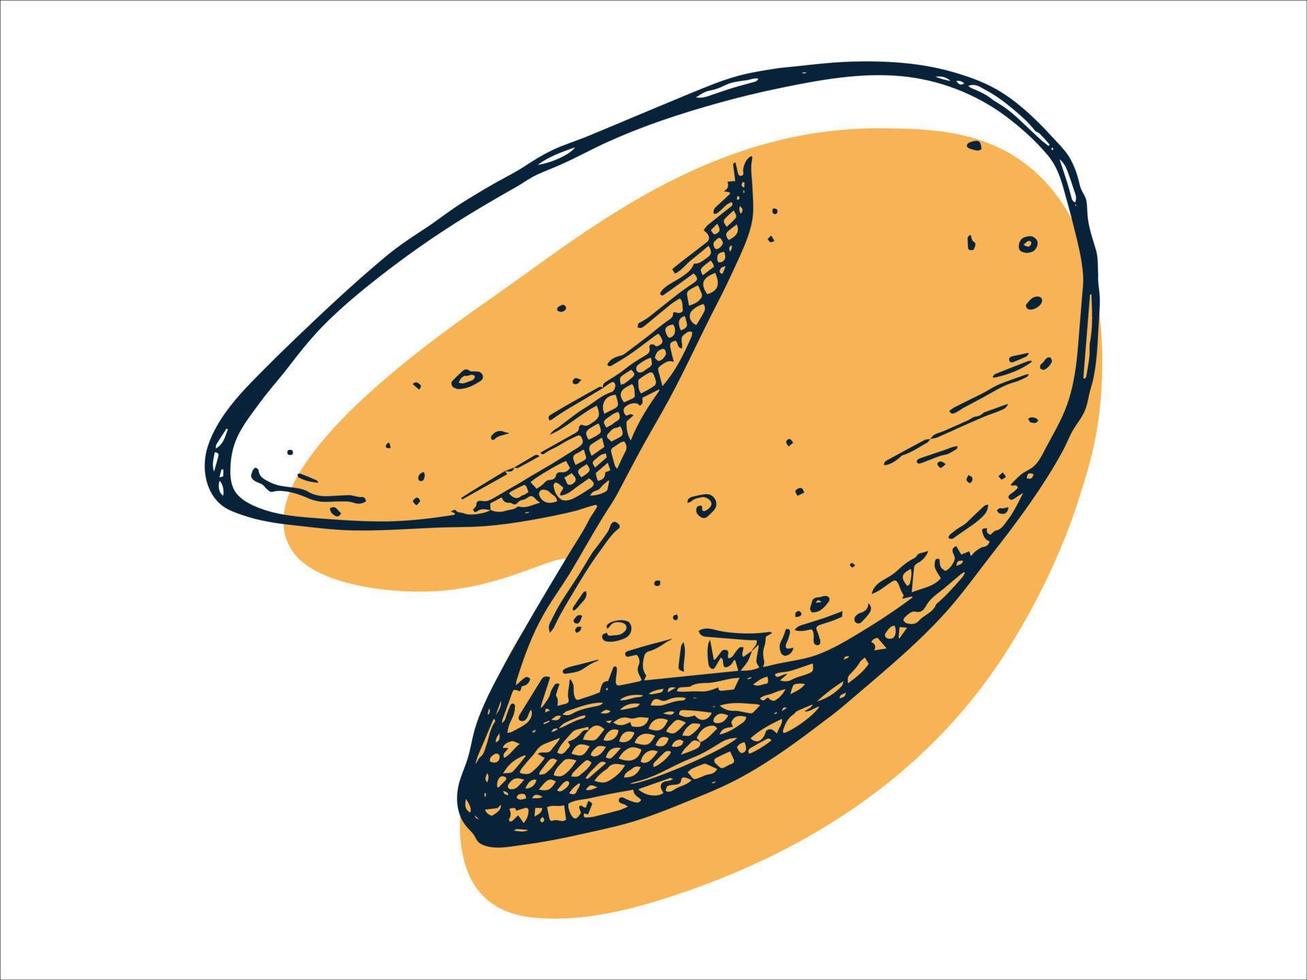 galleta de la fortuna china dibujada a mano vectorial aislada en fondos blancos. ilustración de comida galleta crujiente con un papel en blanco dentro. para impresión, web, diseño, decoración, logotipo. vector